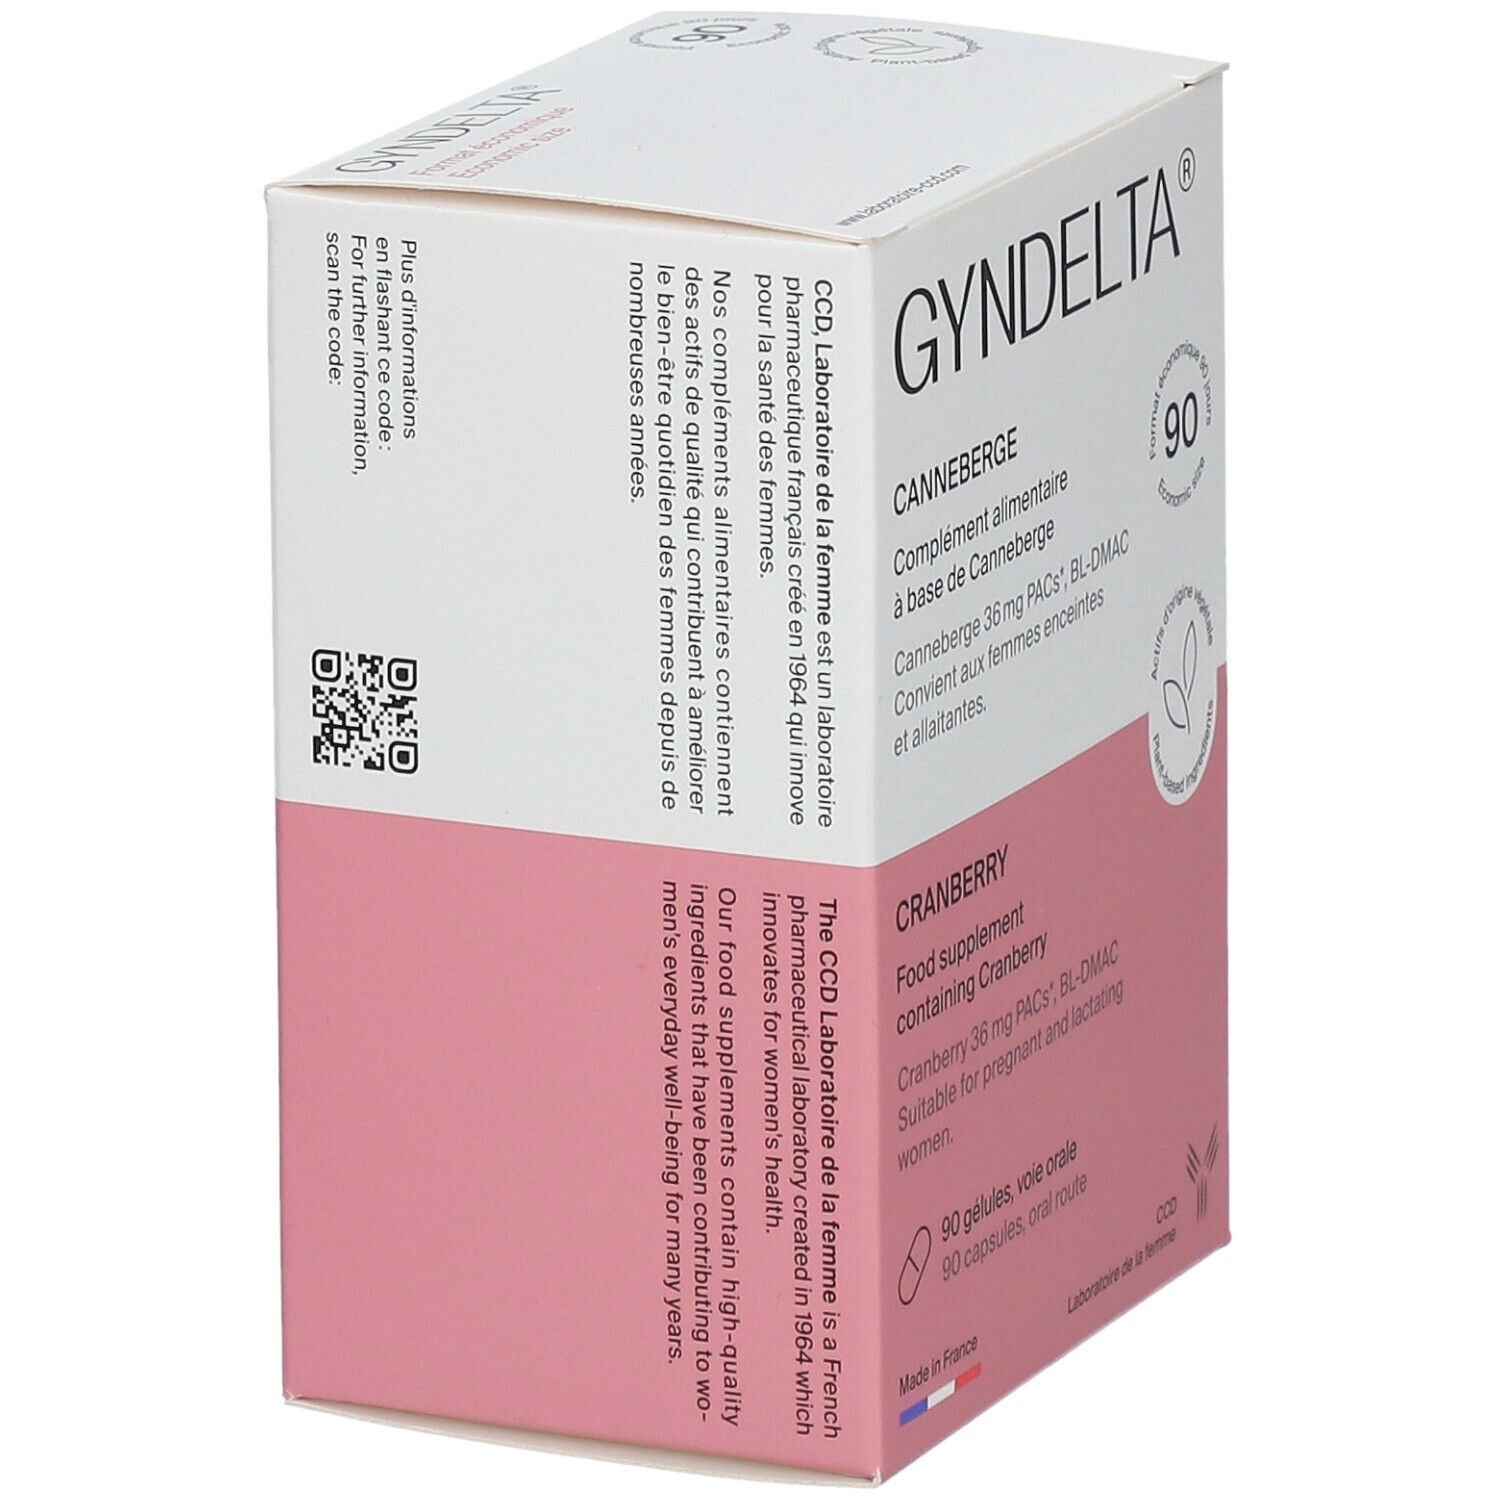 GynDelta 36 mg